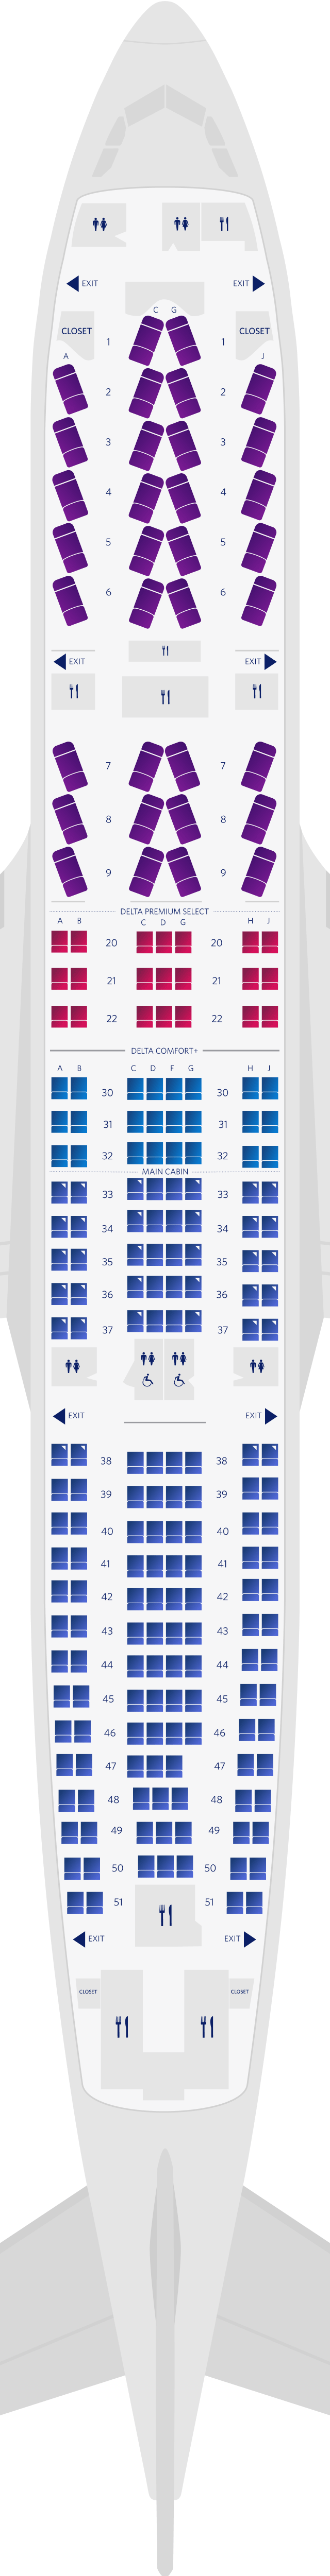 Mapa de asientos del Airbus A330-200 de 4 cabinas